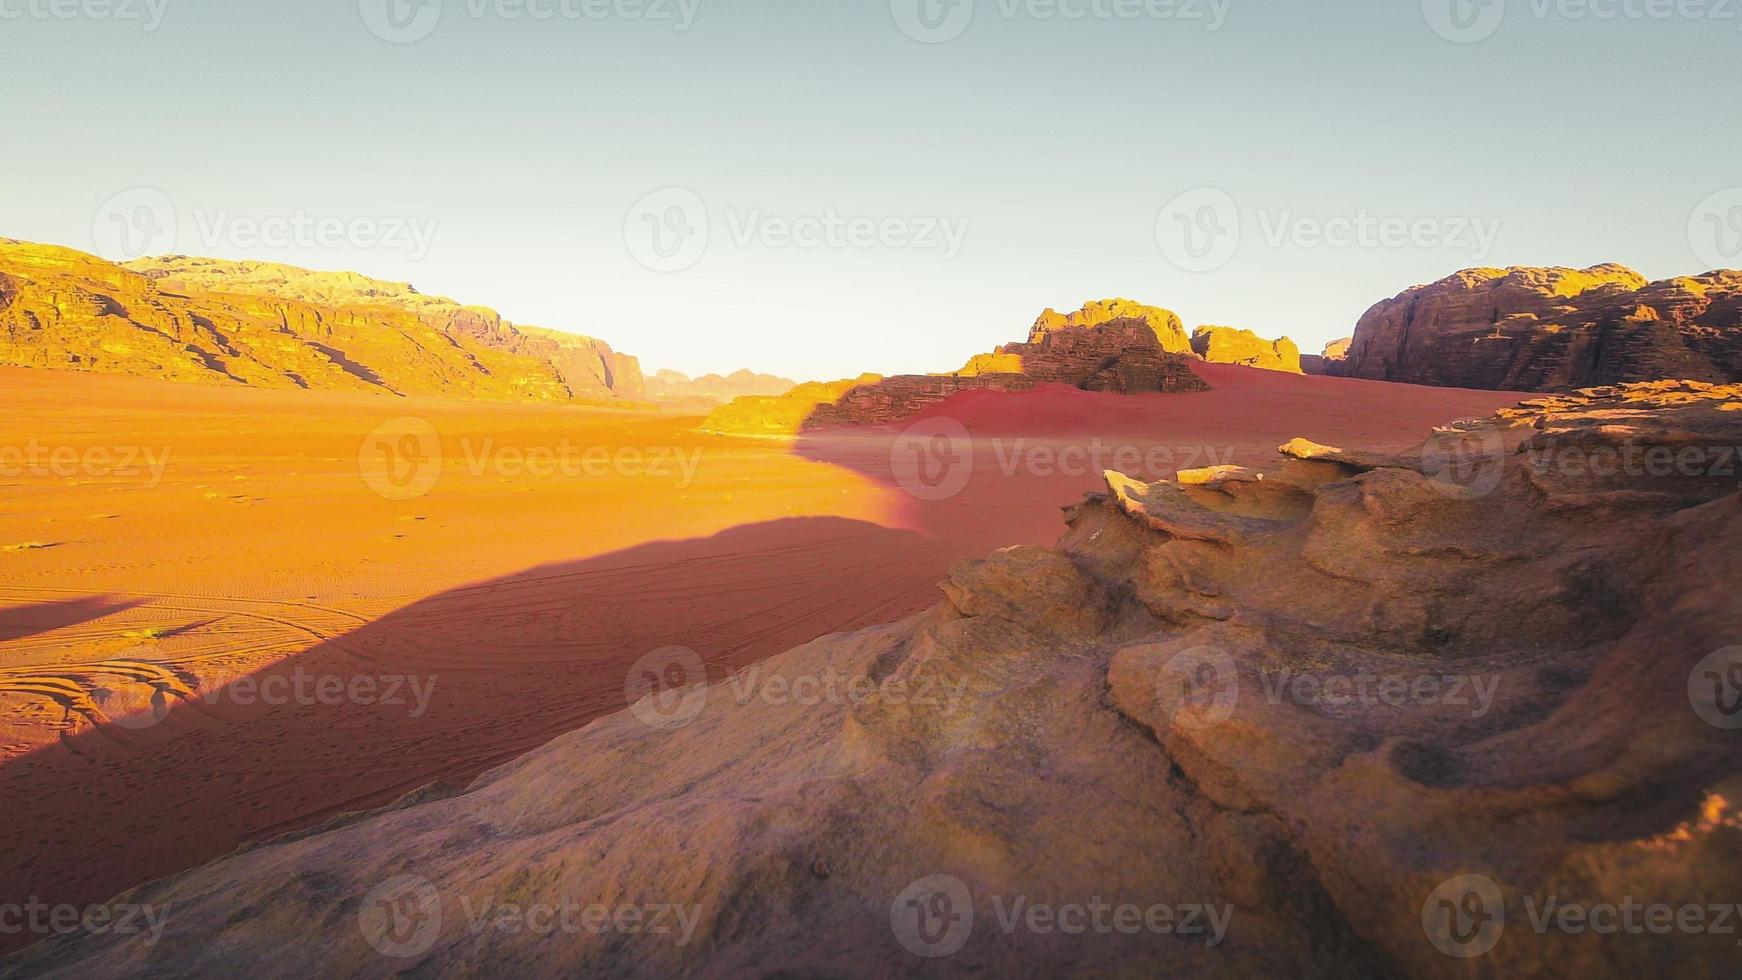 planeta marte como paisaje - foto del desierto de wadi rum en jordania con cielo rosa rojo arriba, esta ubicación fue utilizada como escenario para muchas películas de ciencia ficción